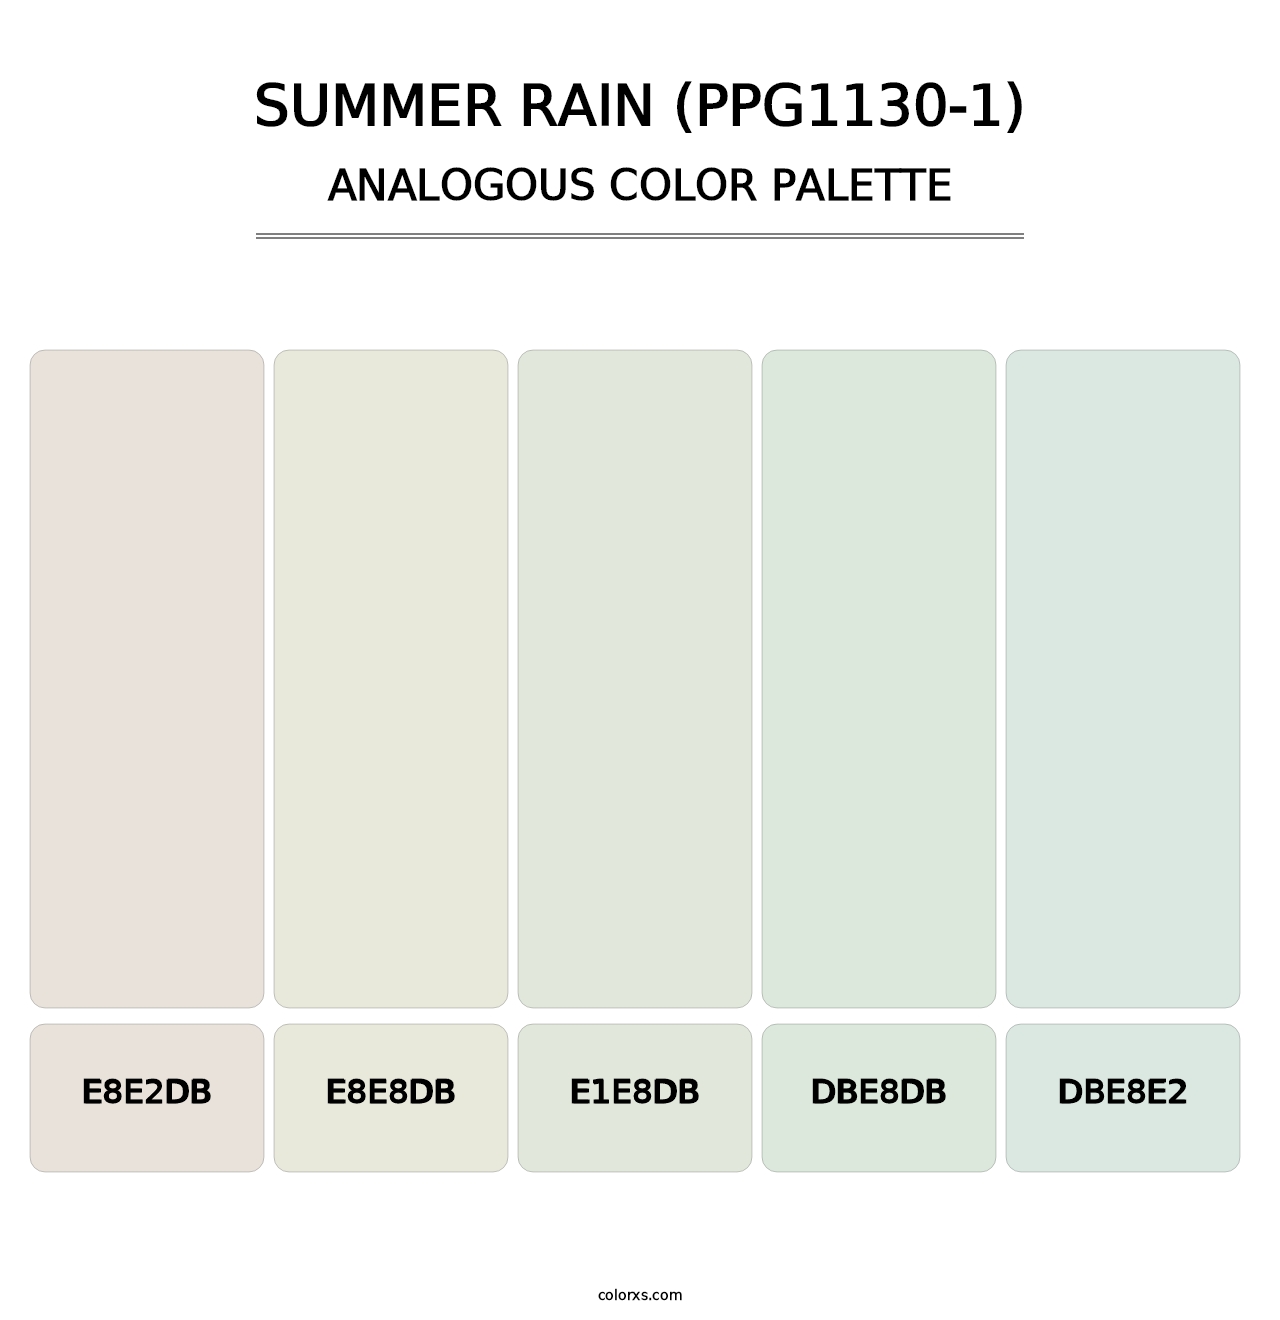 Summer Rain (PPG1130-1) - Analogous Color Palette